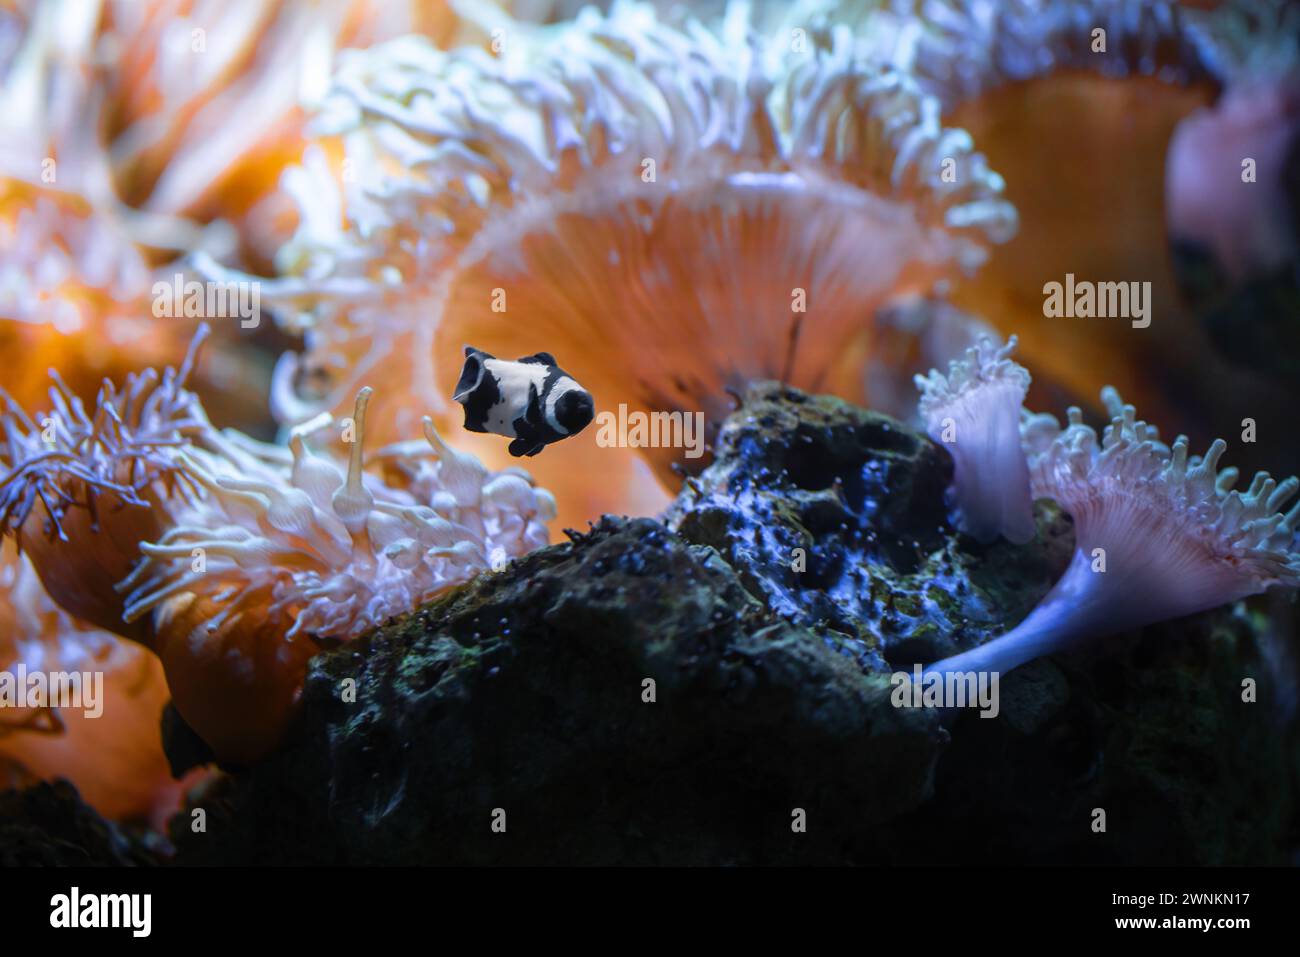 Poisson clown ocellaris noir (Amphiprion ocellaris) - poisson marin Banque D'Images